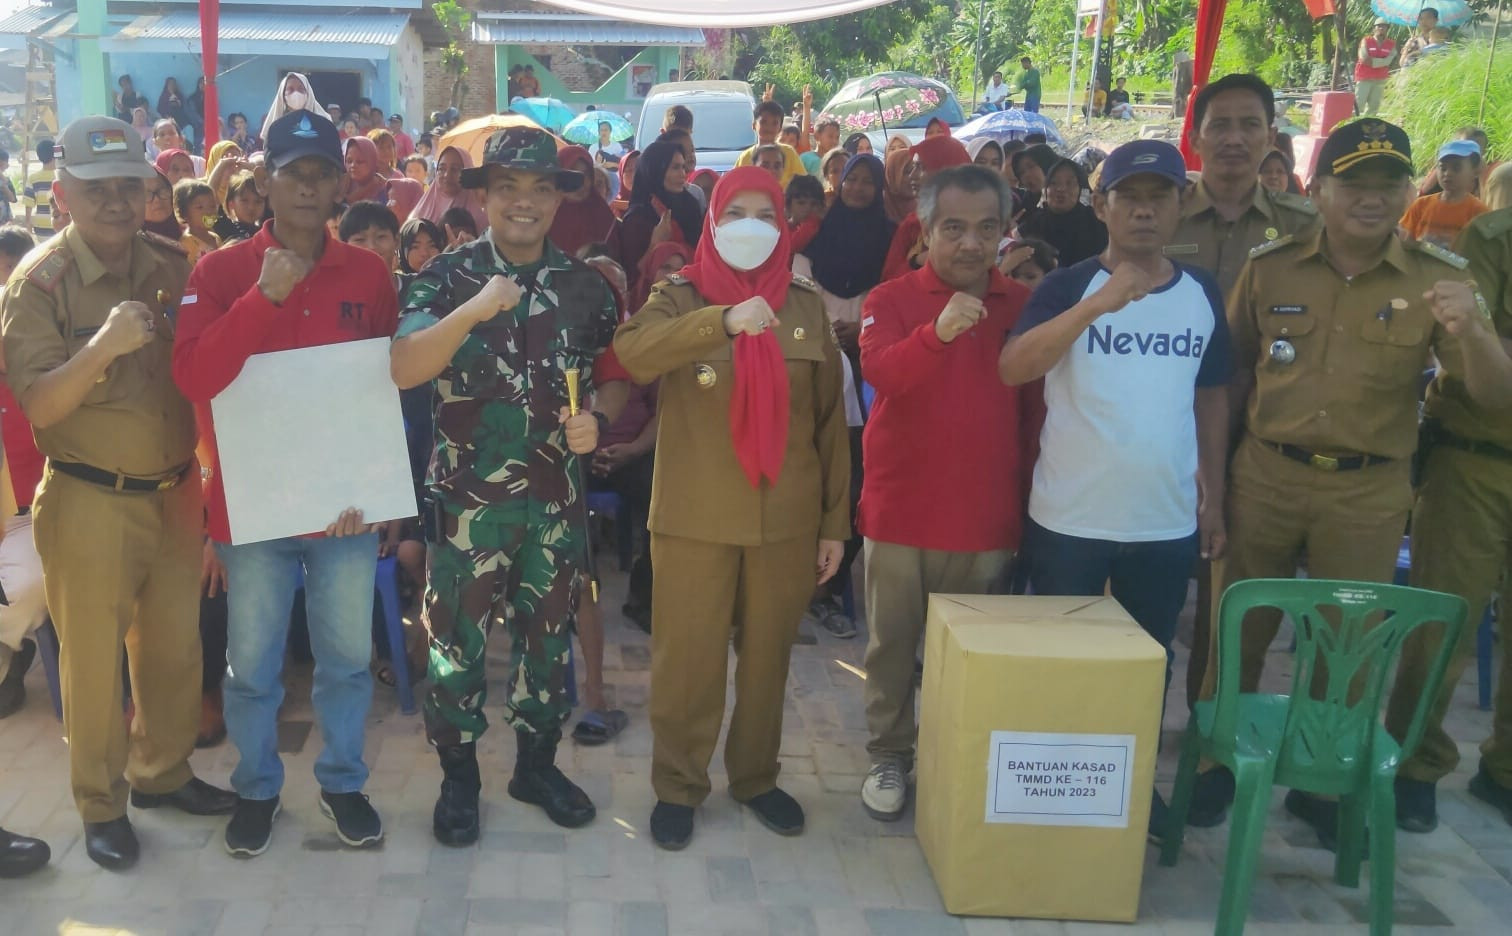 Dandim 0410/KBL dan Wali Kota Bandar Lampung Serahkan Bantuan Kasad Kepada Warga - JPNN.com Lampung